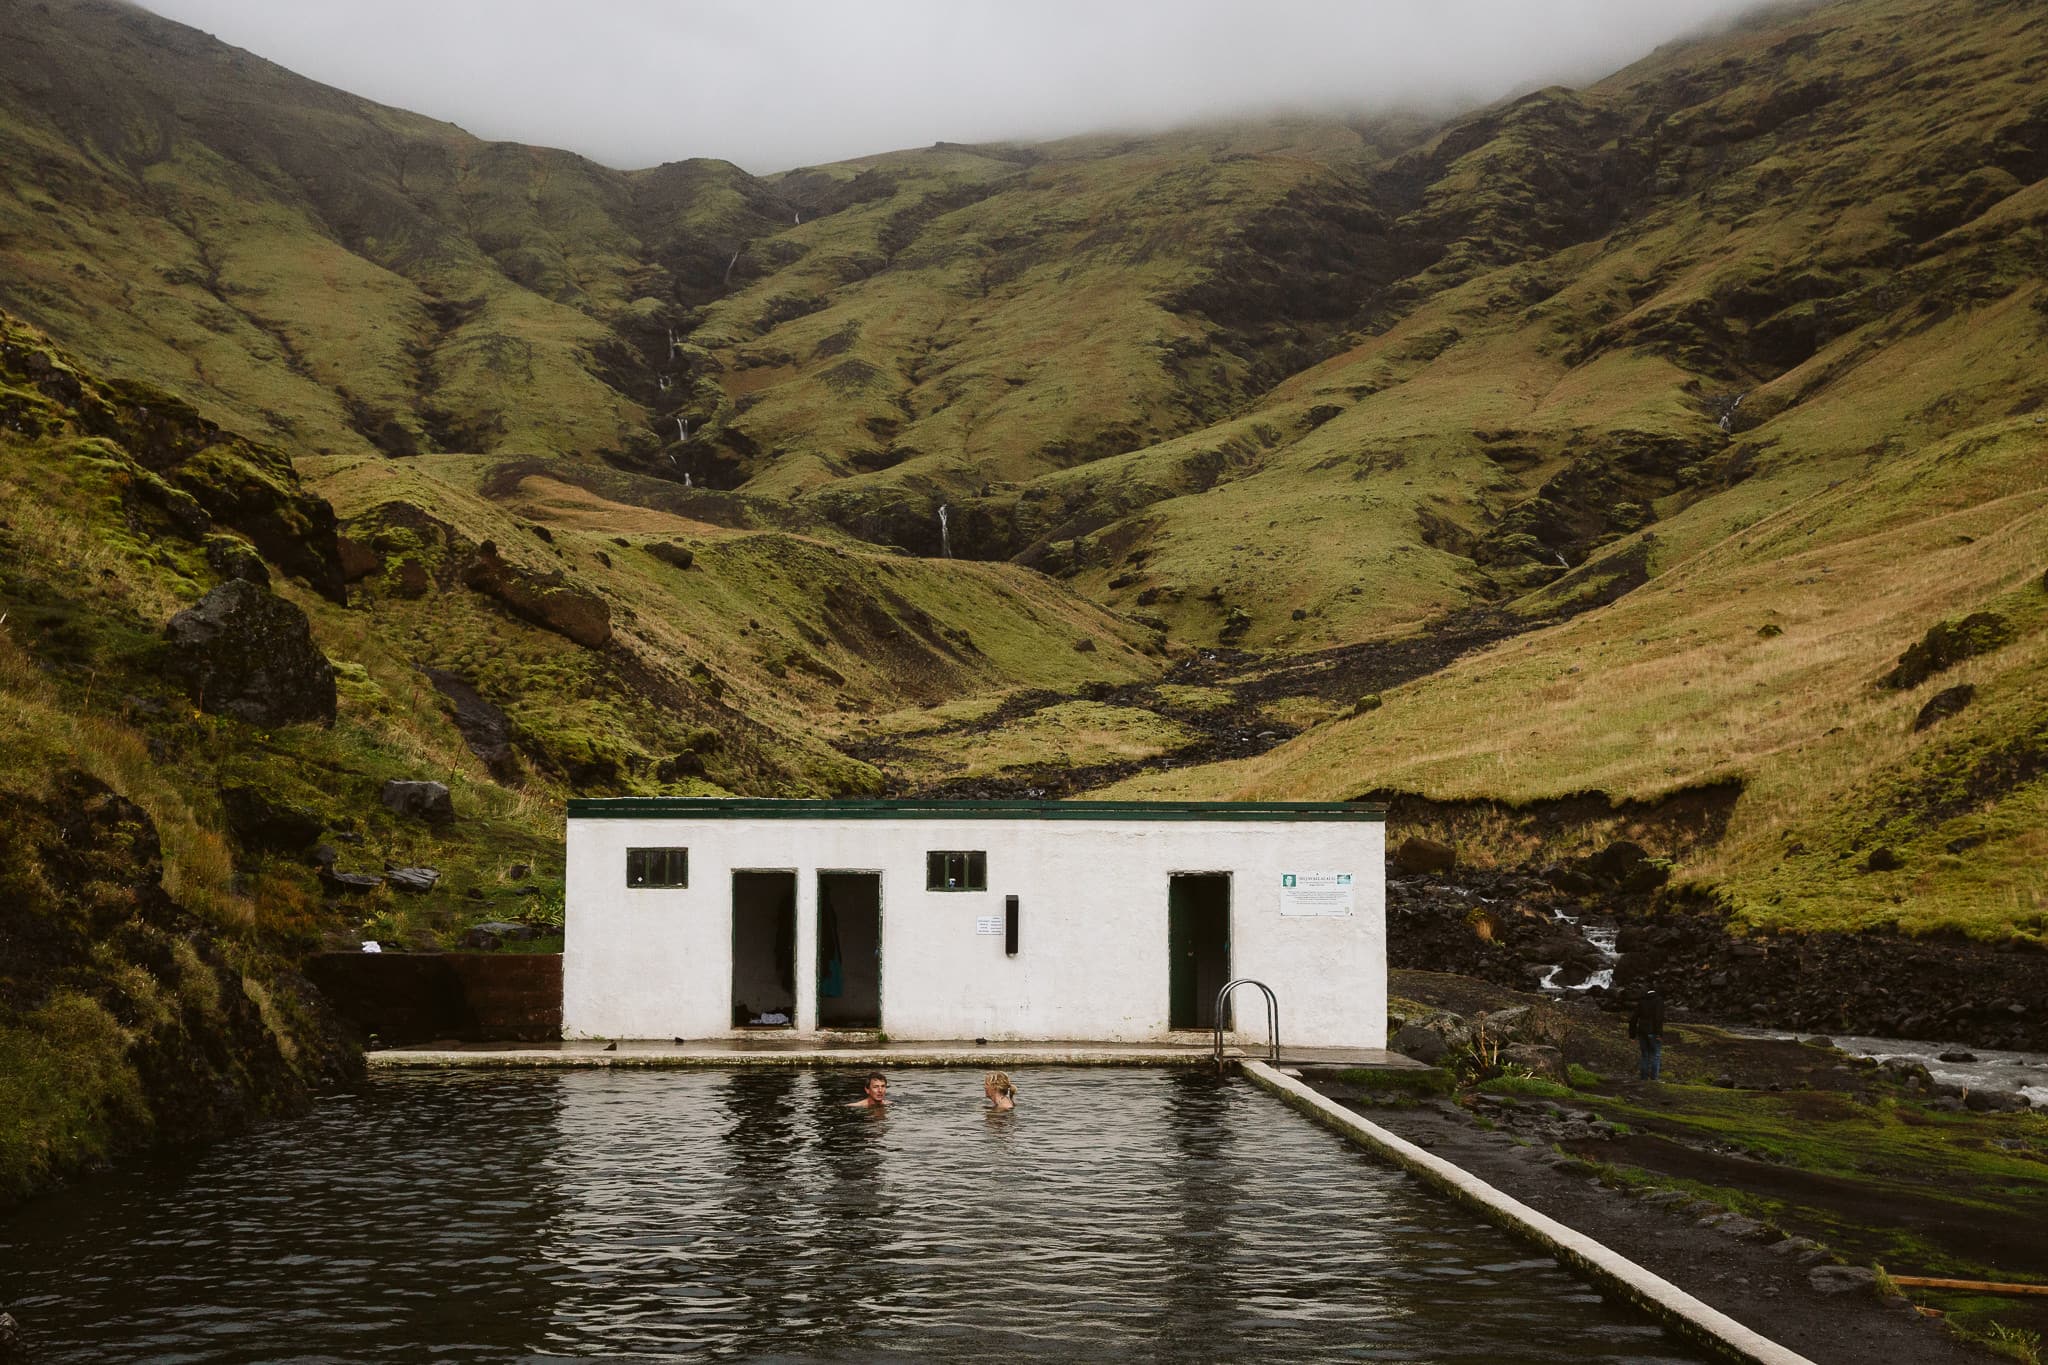 Seljavallalaug pool in Iceland